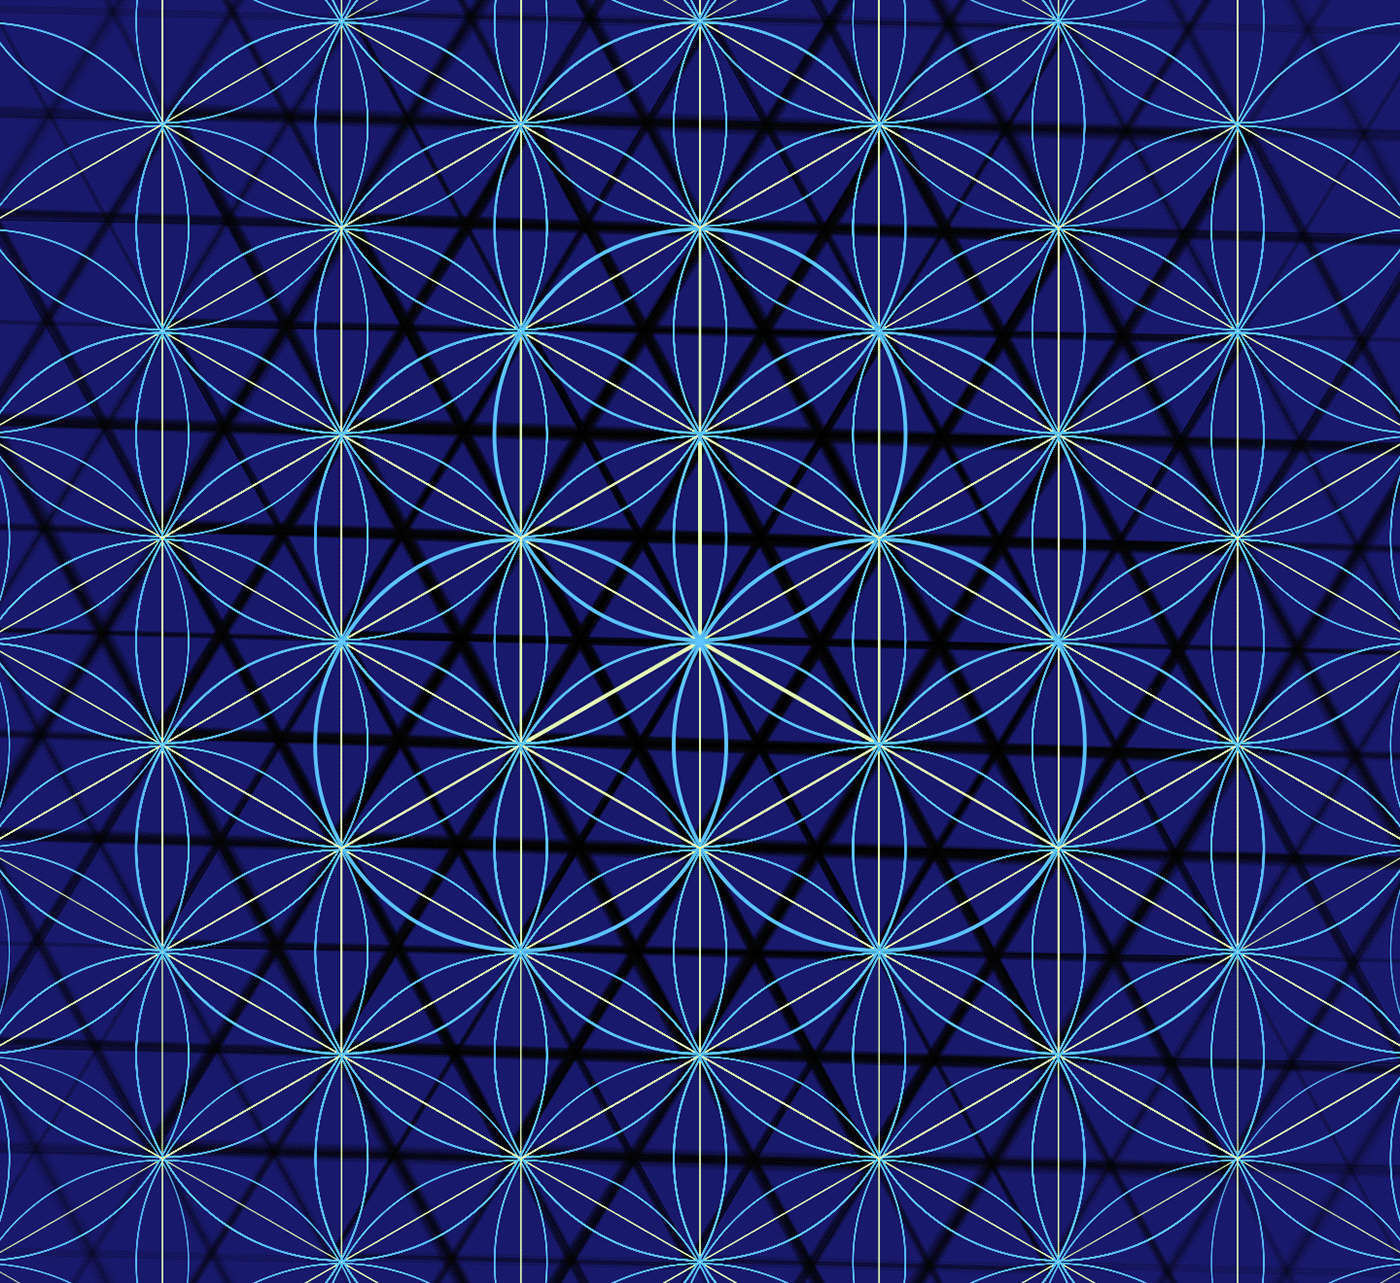 omnigeometry geometry symmetrical Mandala mandalaart Mandala Art Mandalas quantum fractal energy